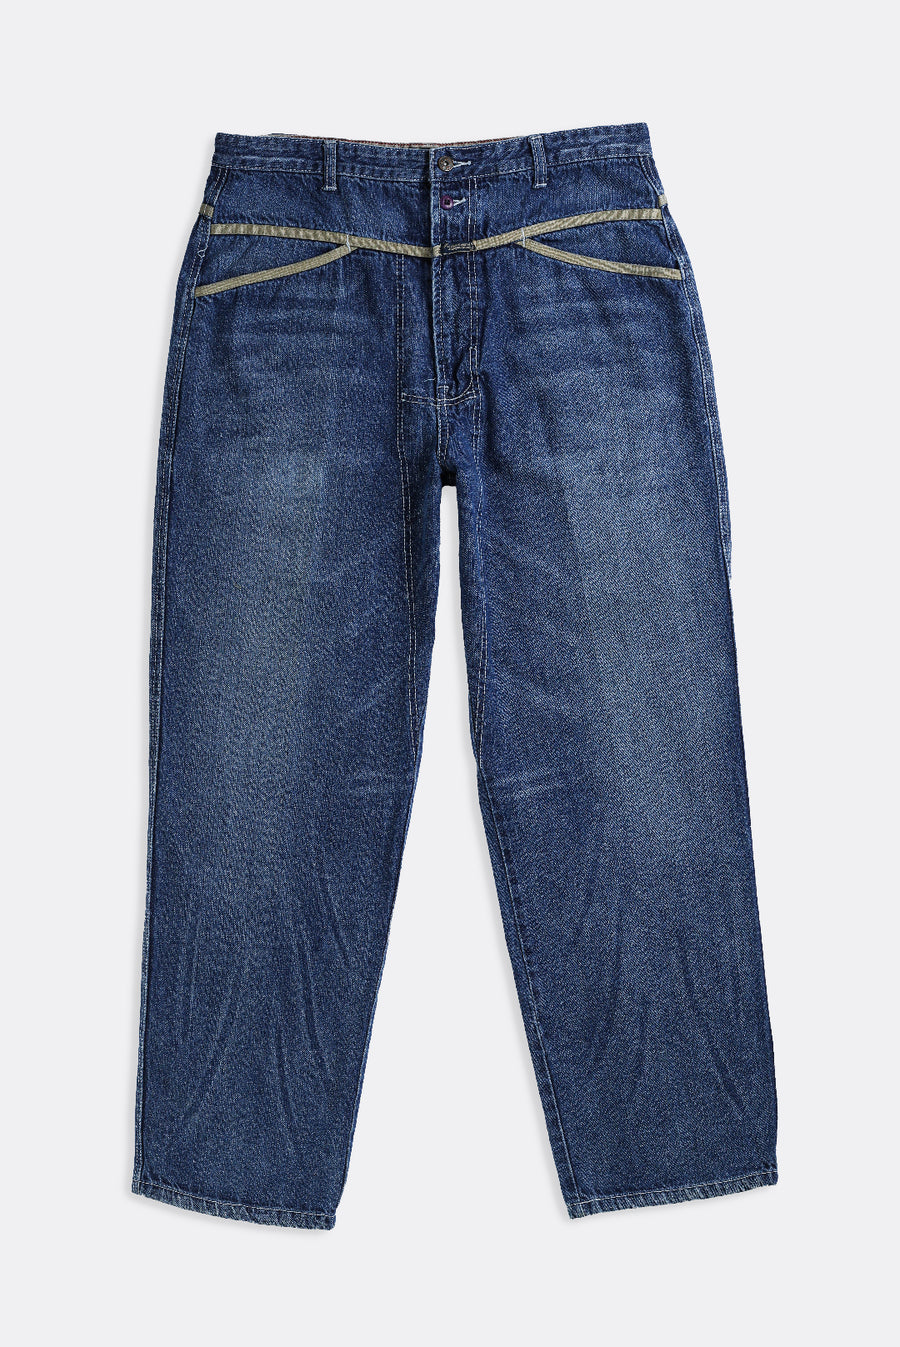 Vintage Girbaud Denim Pants - W36